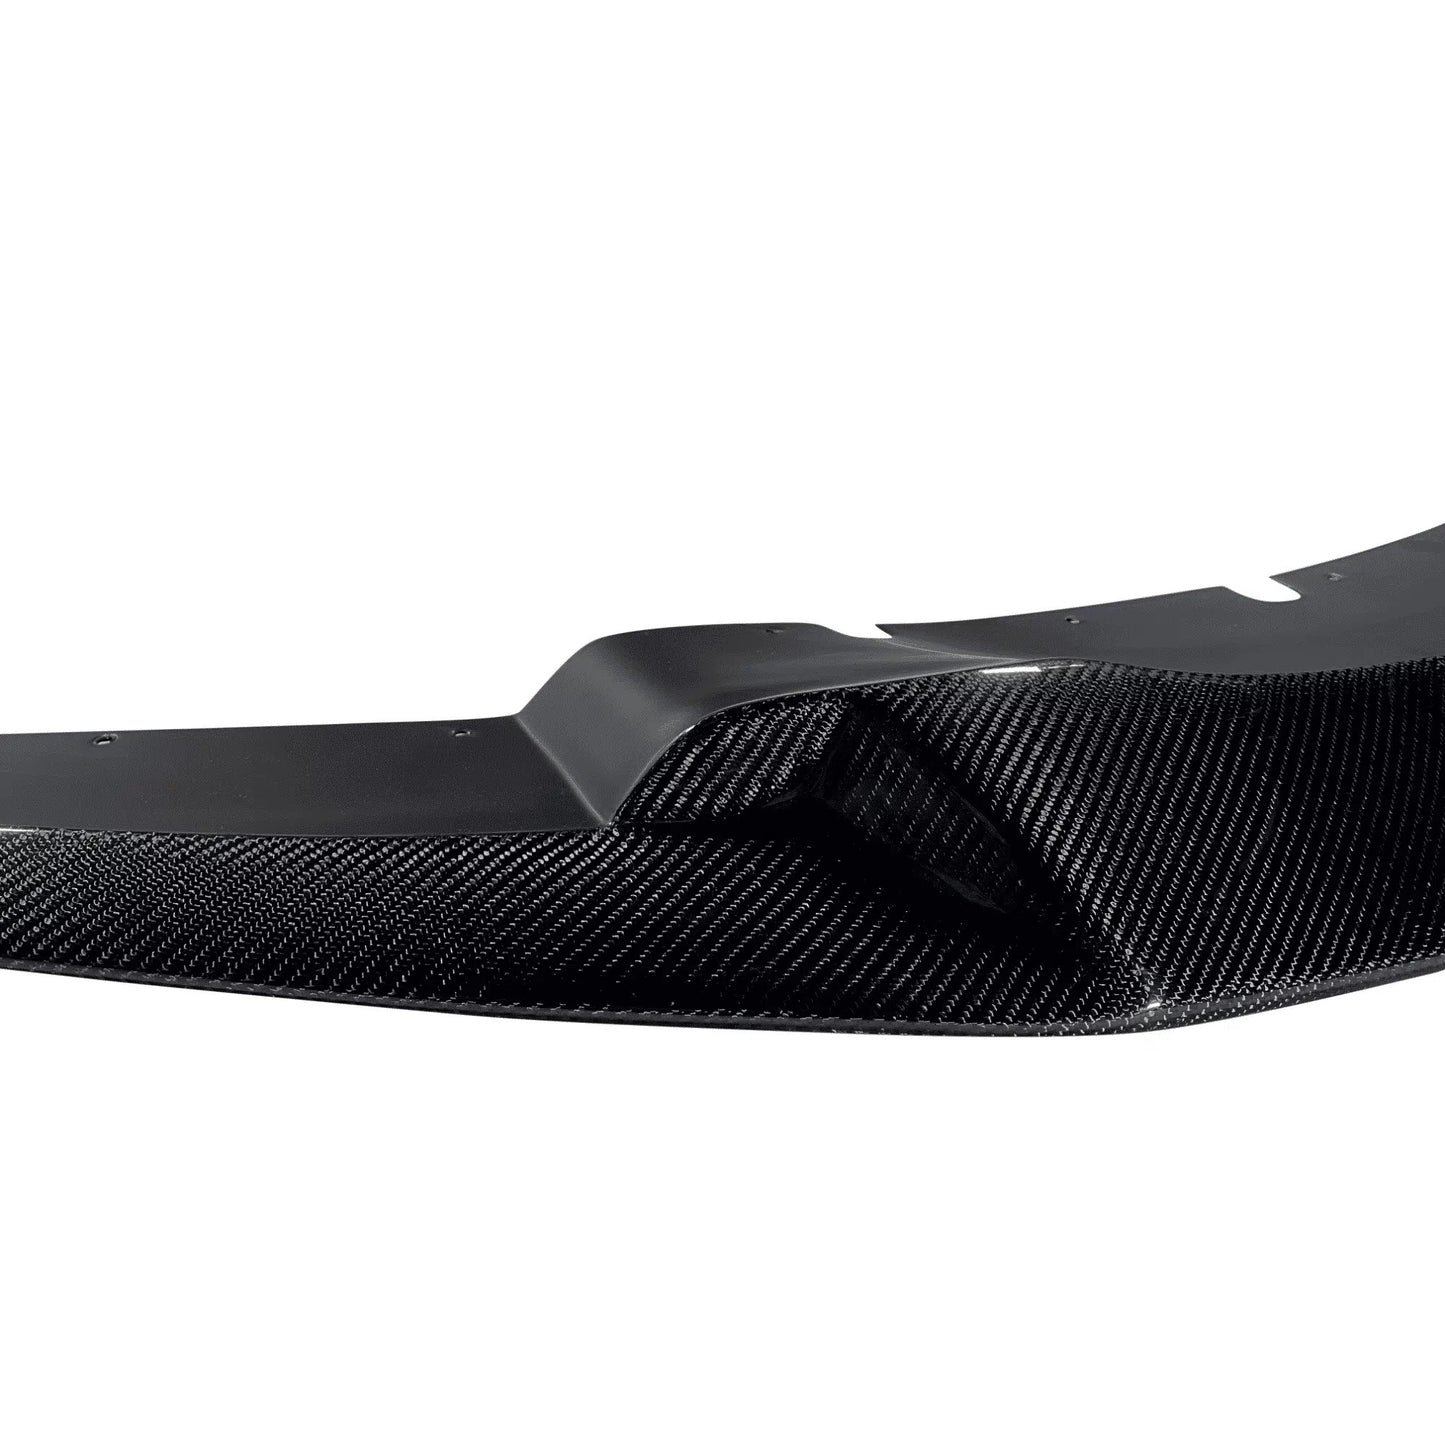 Suvneer Motorsports™ G30 Carbon Fiber Front Lip